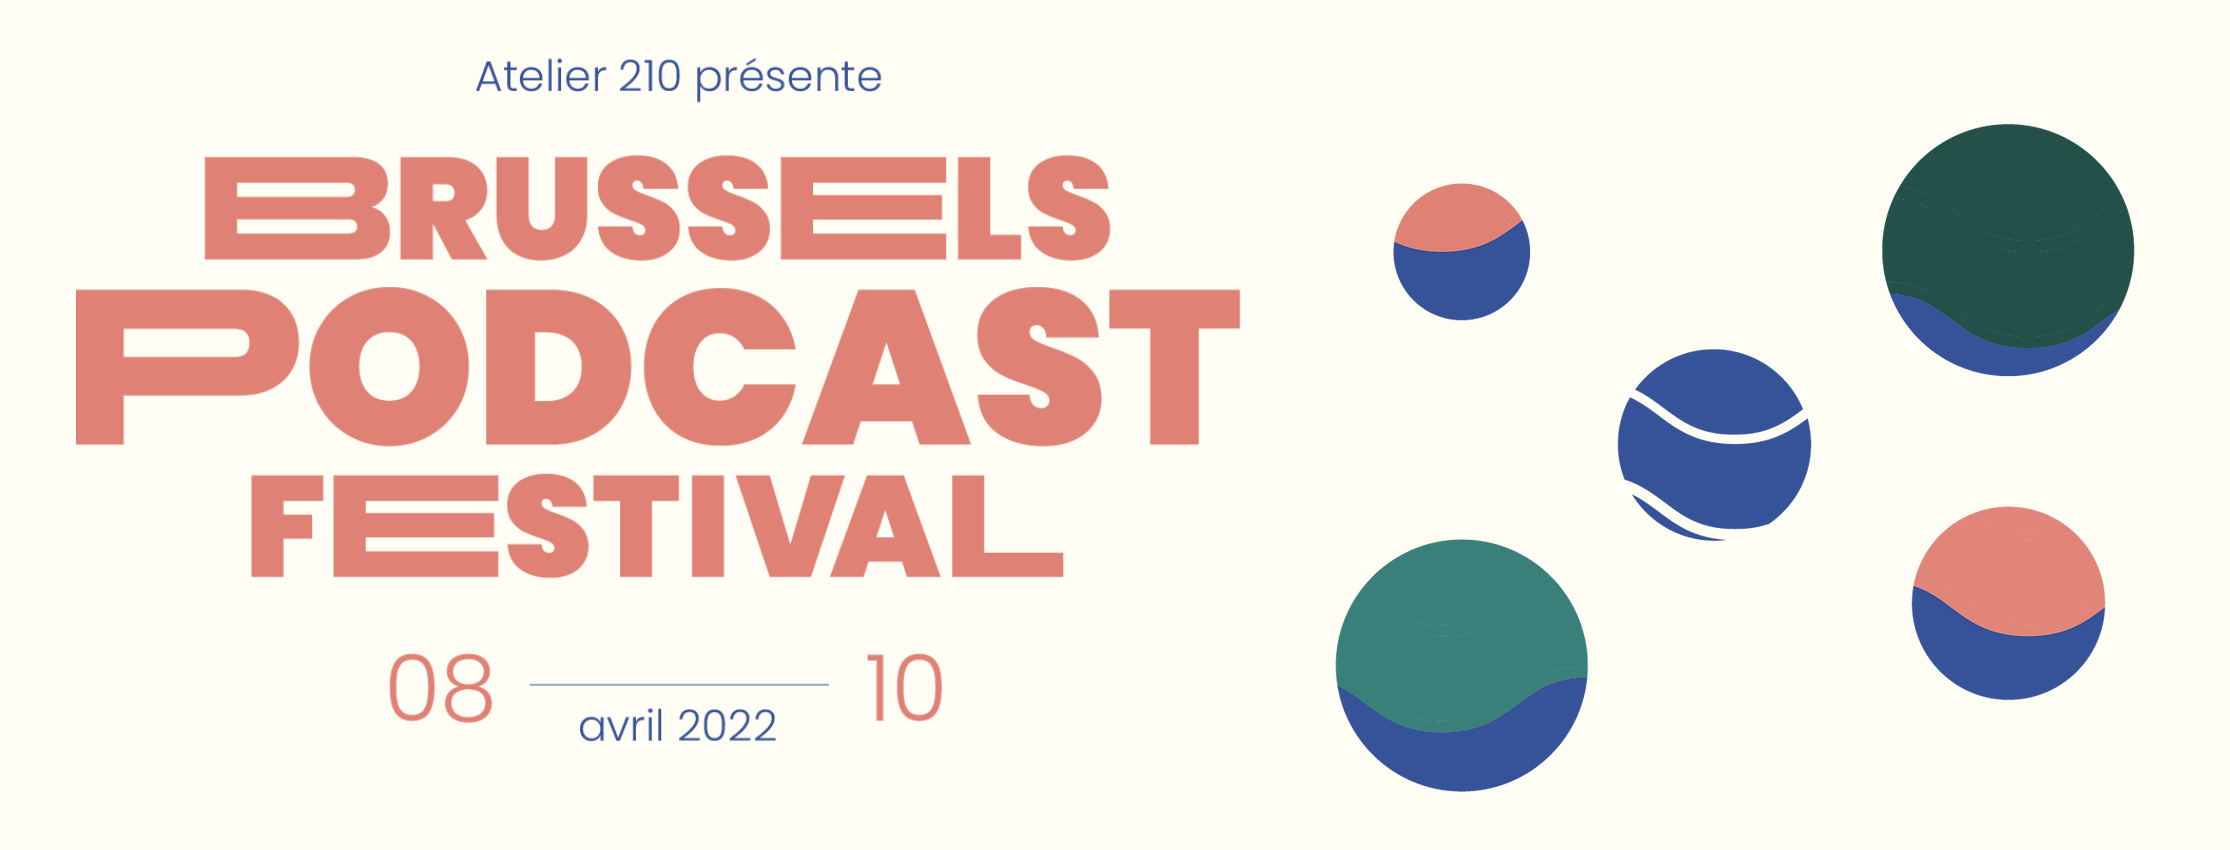 Une nouvelle édition du Brussels Podcast Festival